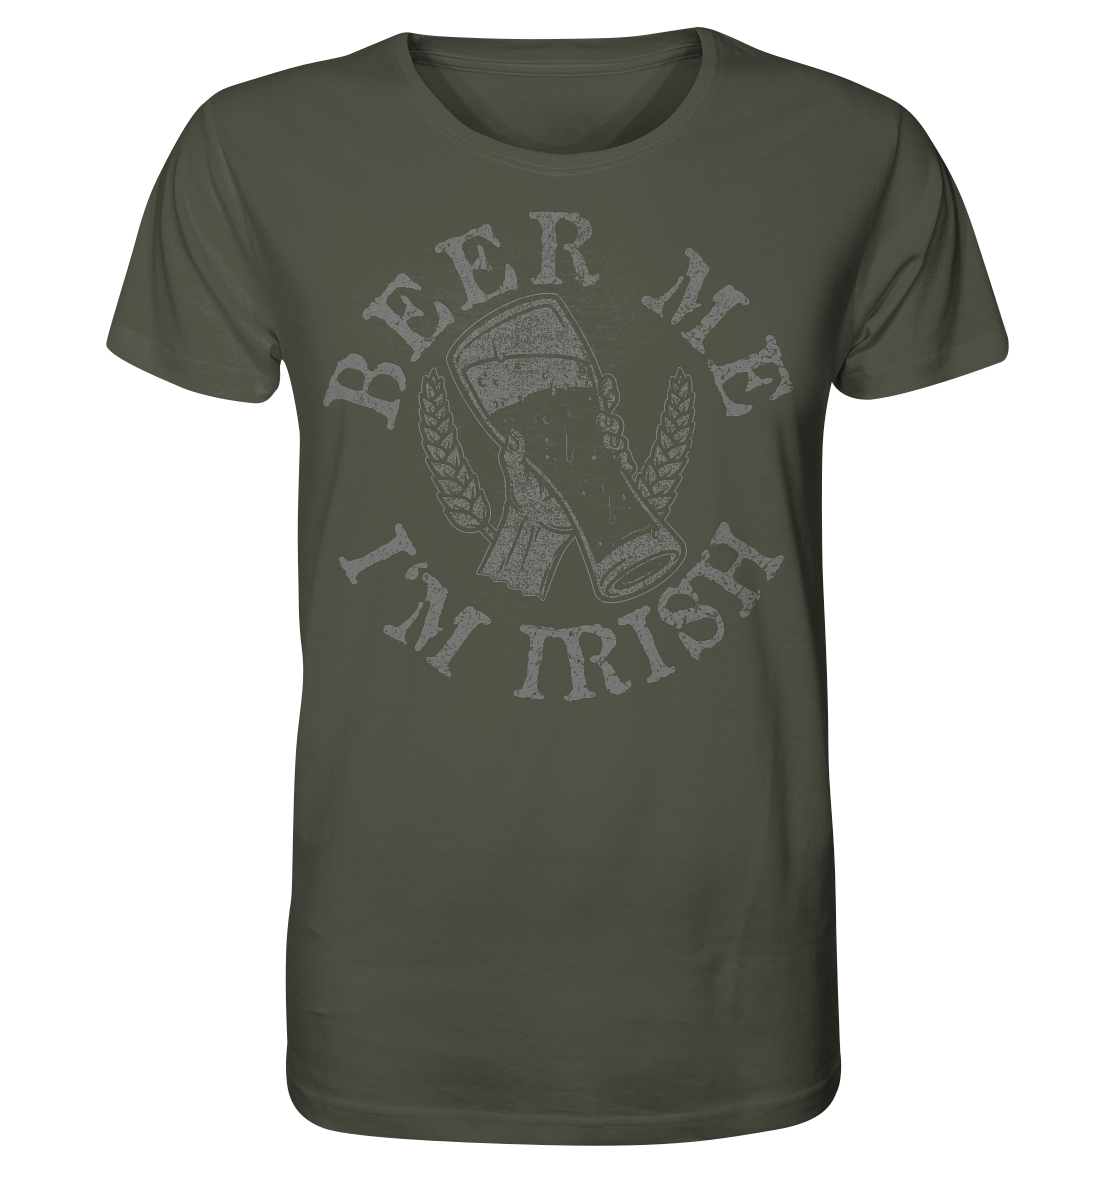 Beer Me "I'm Irish" - Organic Shirt